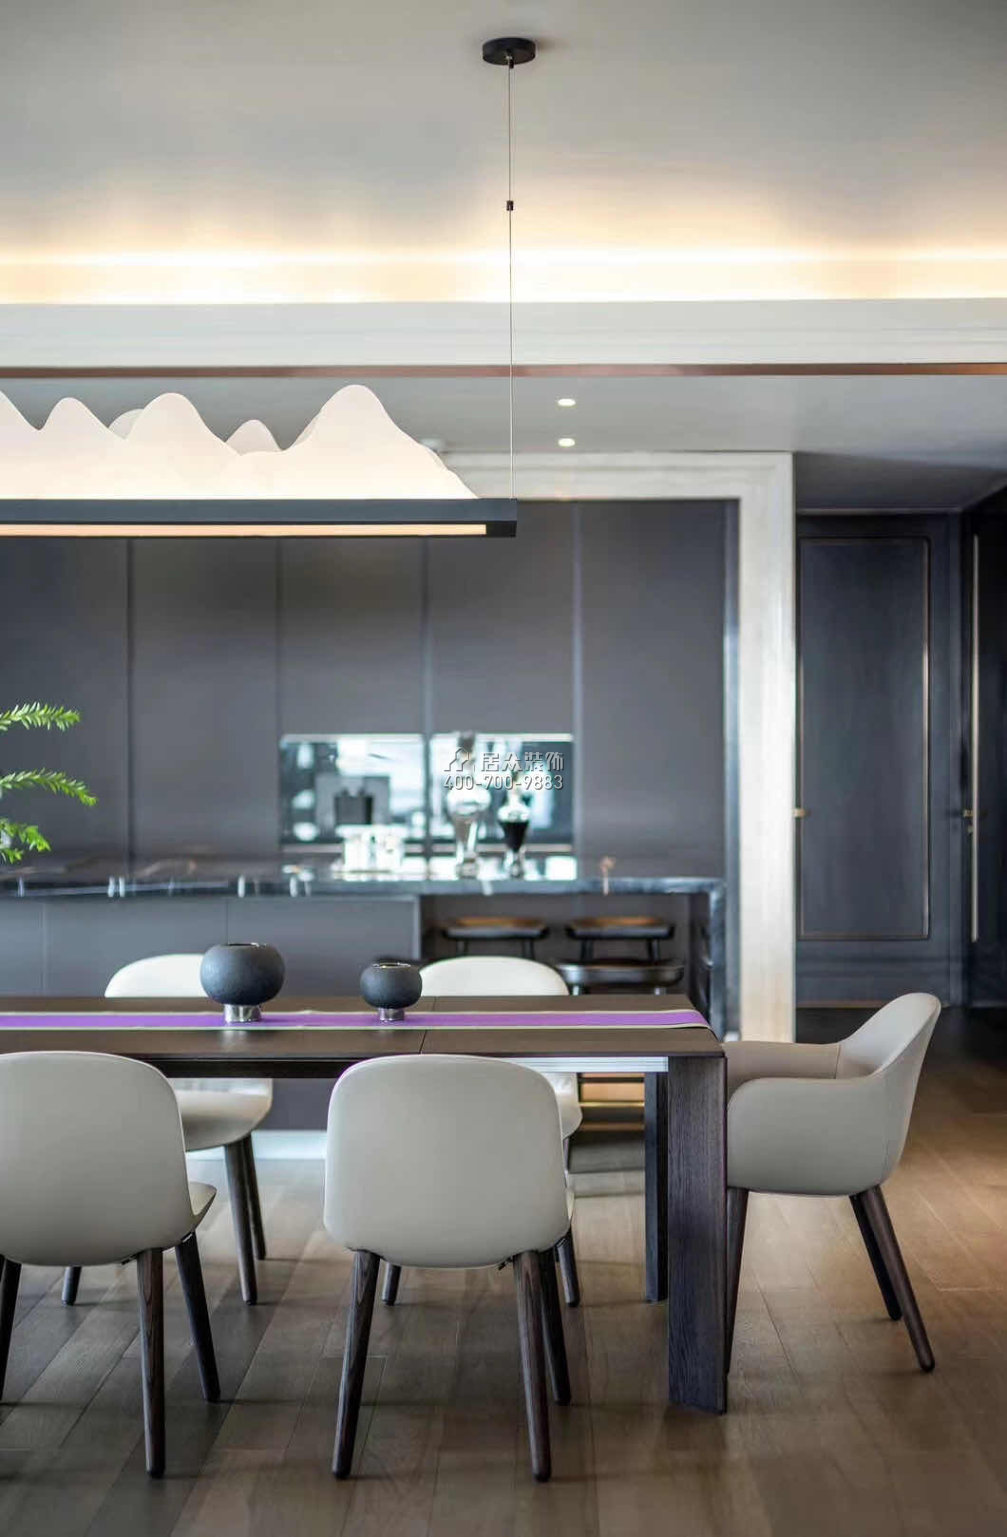 山语清晖一期190平方米现代简约风格平层户型客厅装修效果图